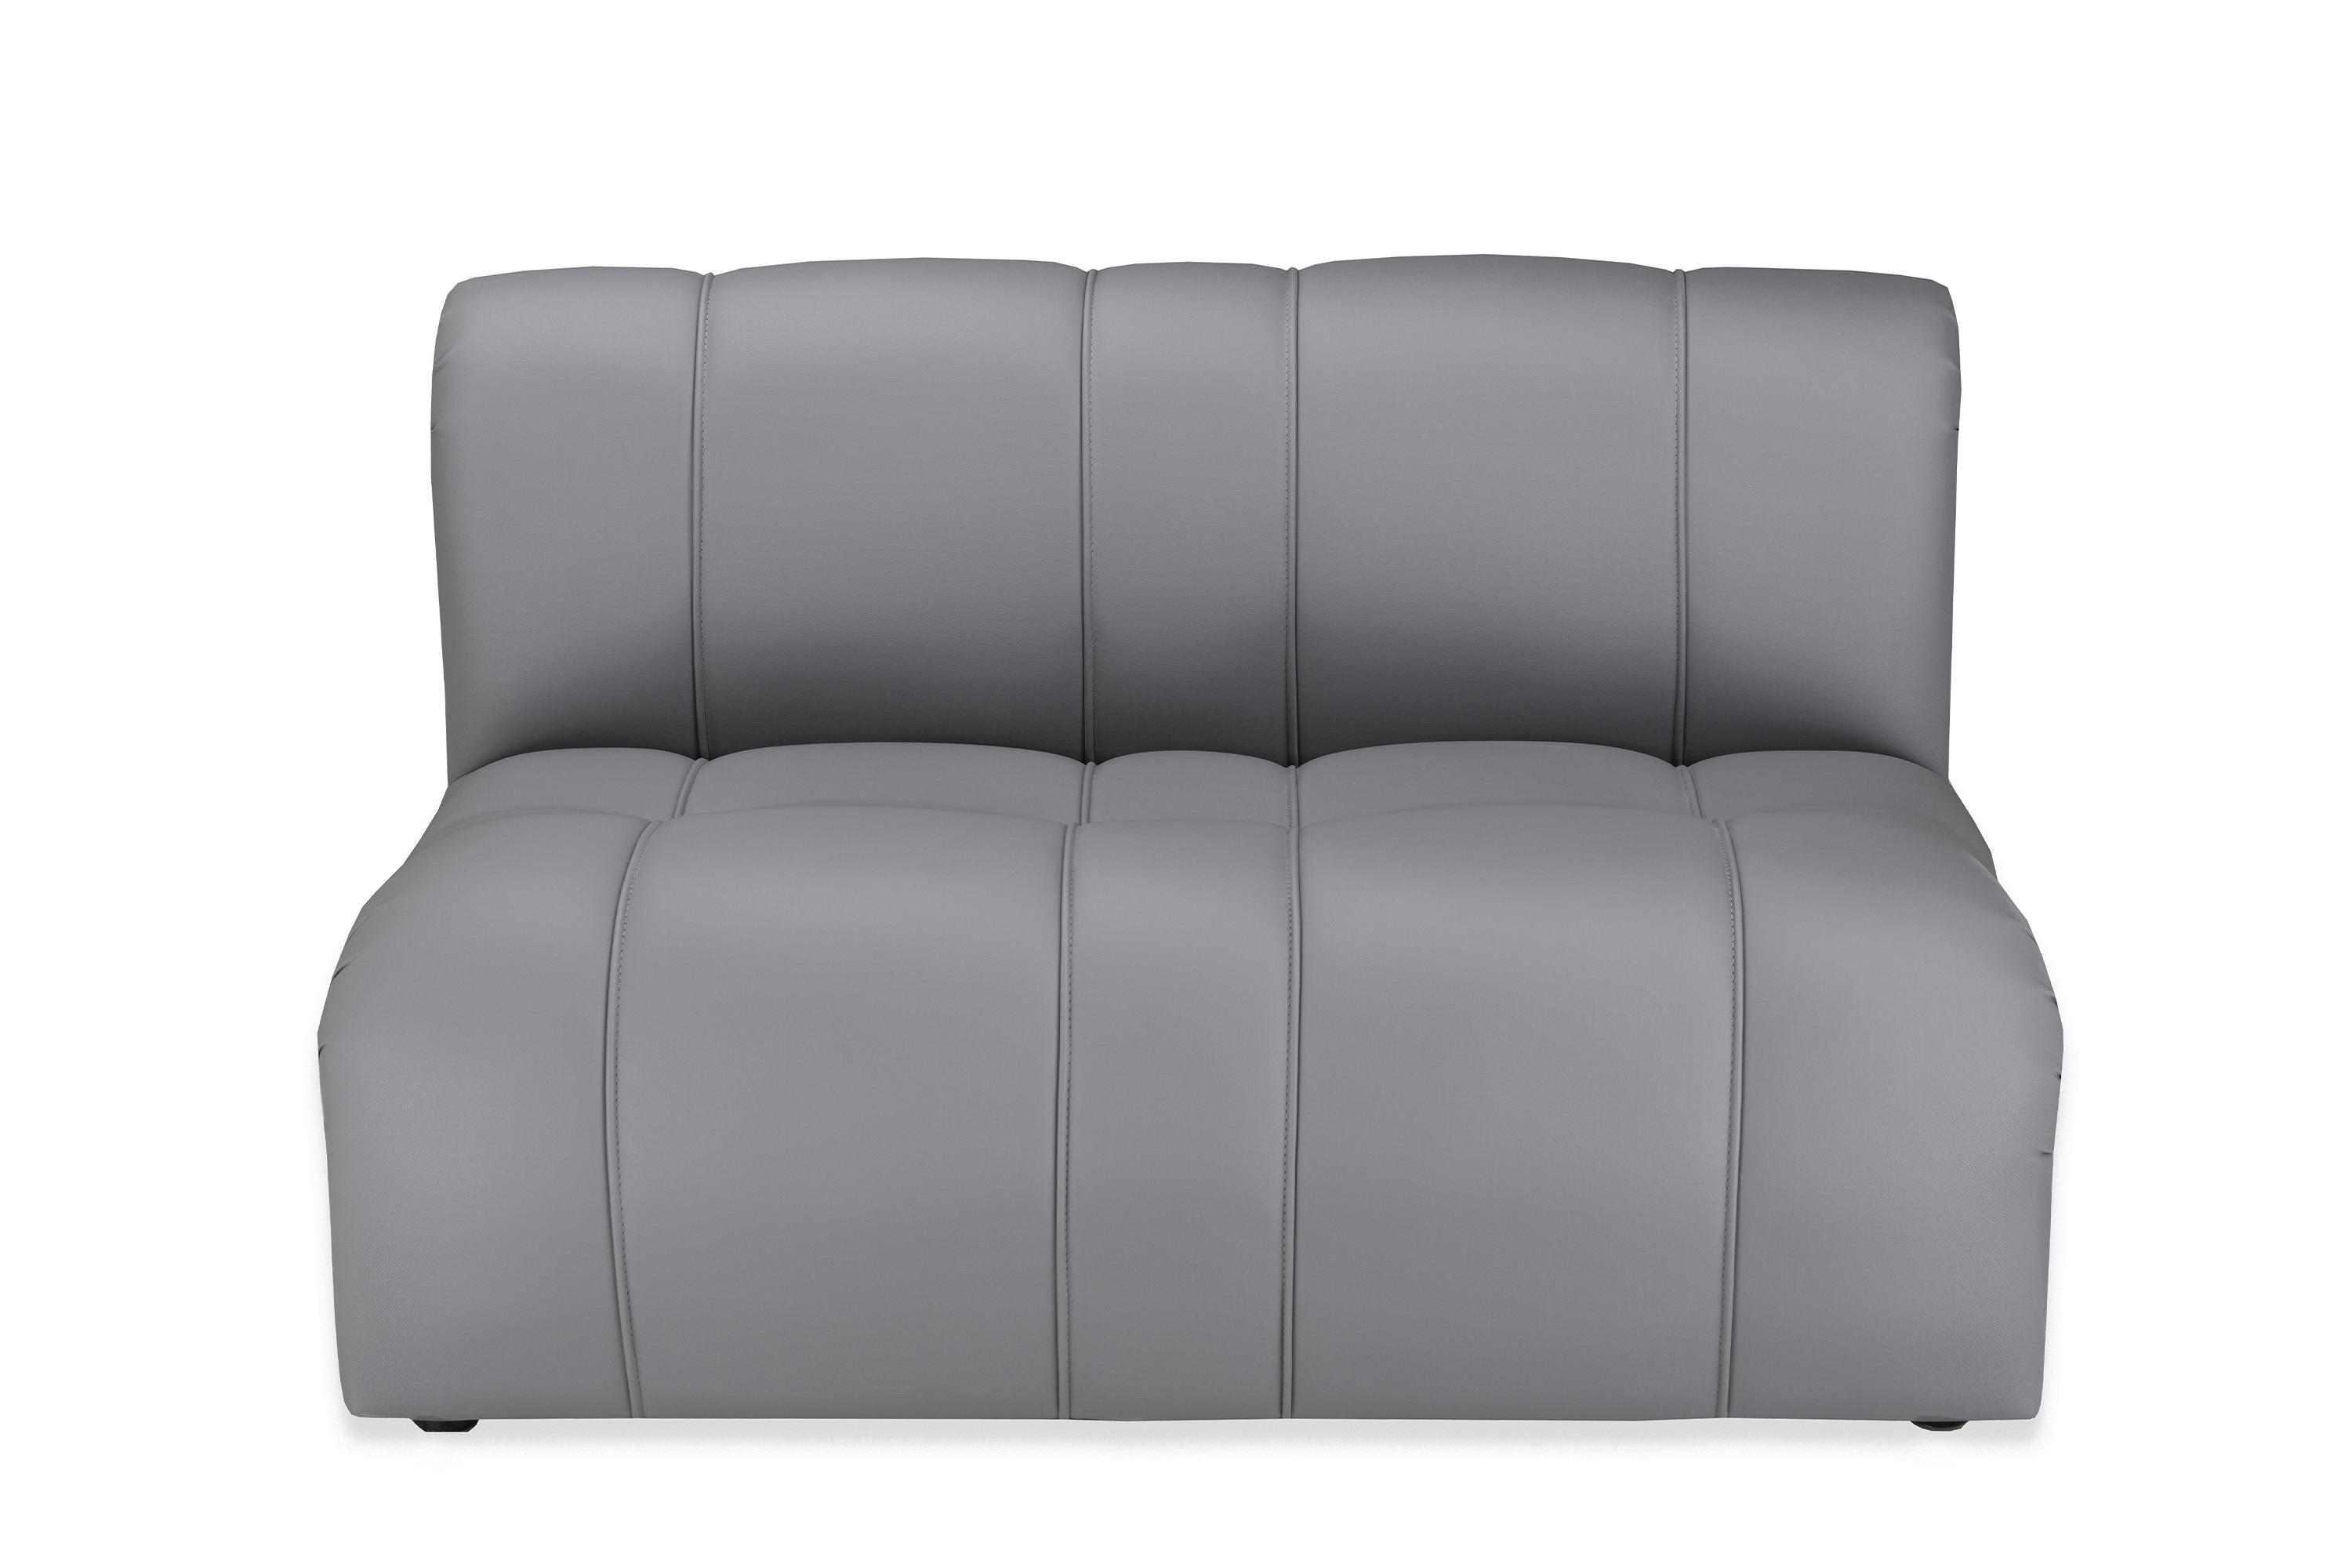 Фото №2 Ригель двухместный диван без подлокотников Экокожа Лайт грей